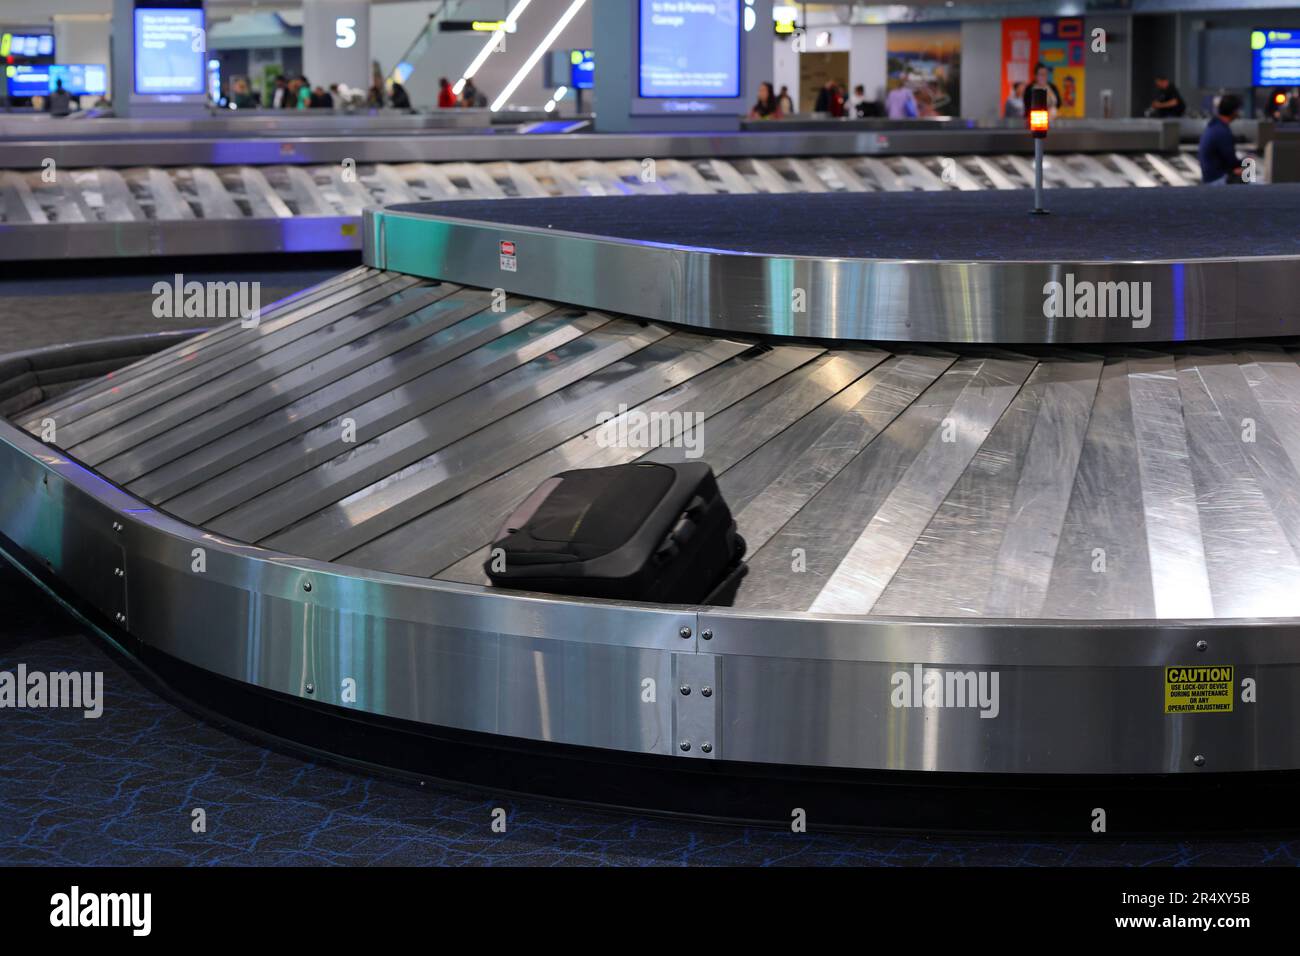 Une valise sur un carrousel à bagages dans une zone de retrait des bagages des arrivées de l'aéroport. Banque D'Images